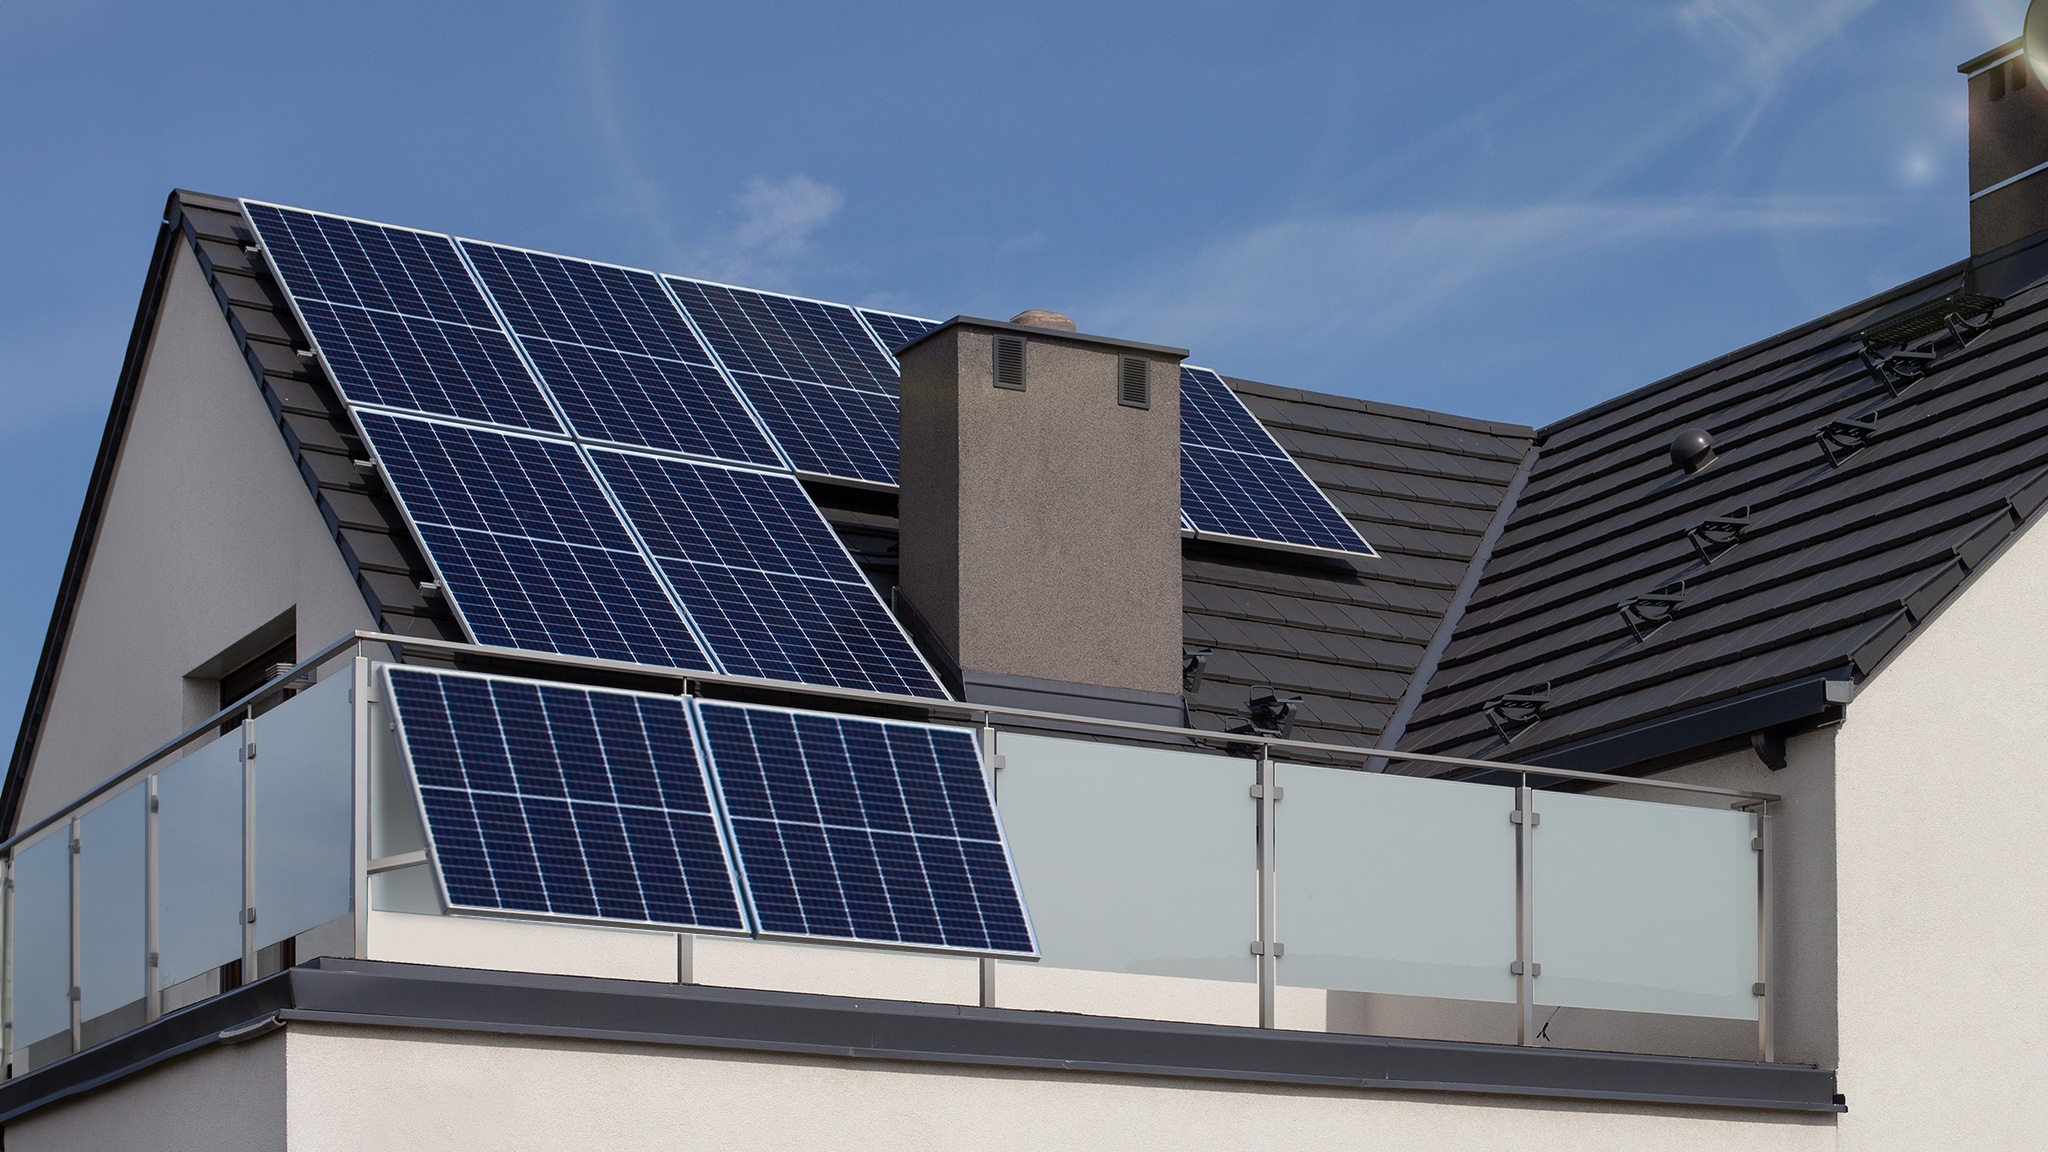 Photovoltaik: Darf man eine Mini-PV-Anlage auf Balkon installieren? - Stil  - SZ.de